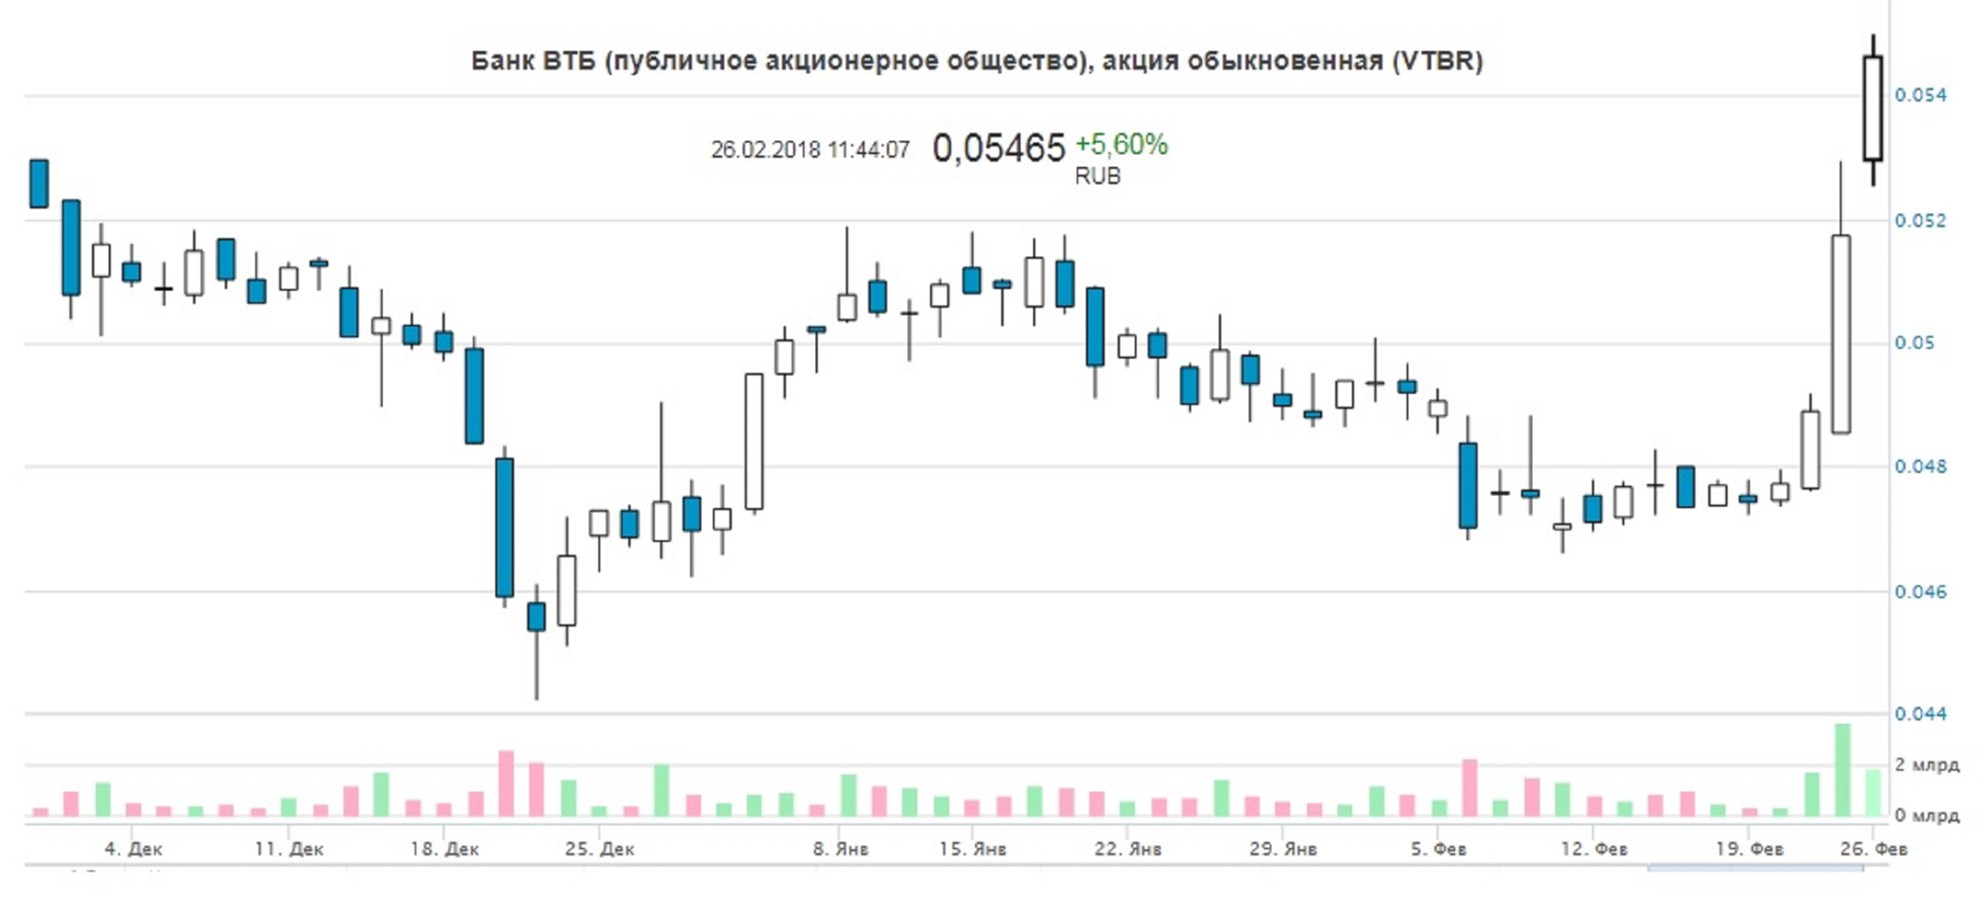 Удвоилась прибыль ВТБ по МСФО: акции растут на 6%